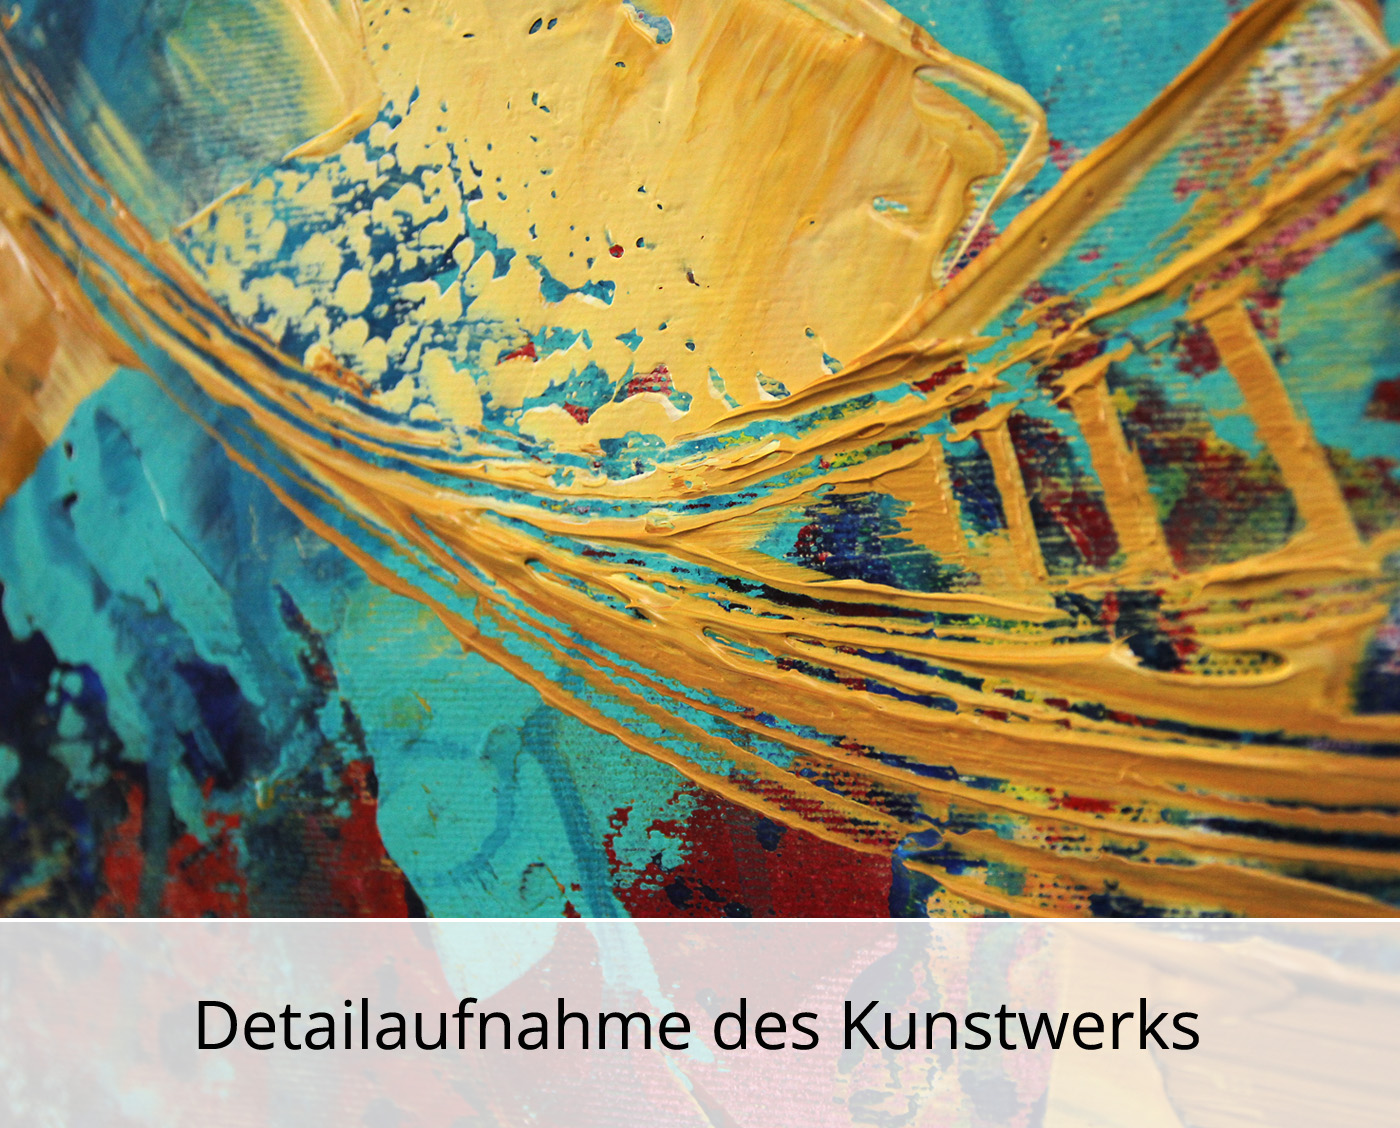 R. König: "Lichtverwirbelung I", abstraktes Originalgemälde (Unikat)